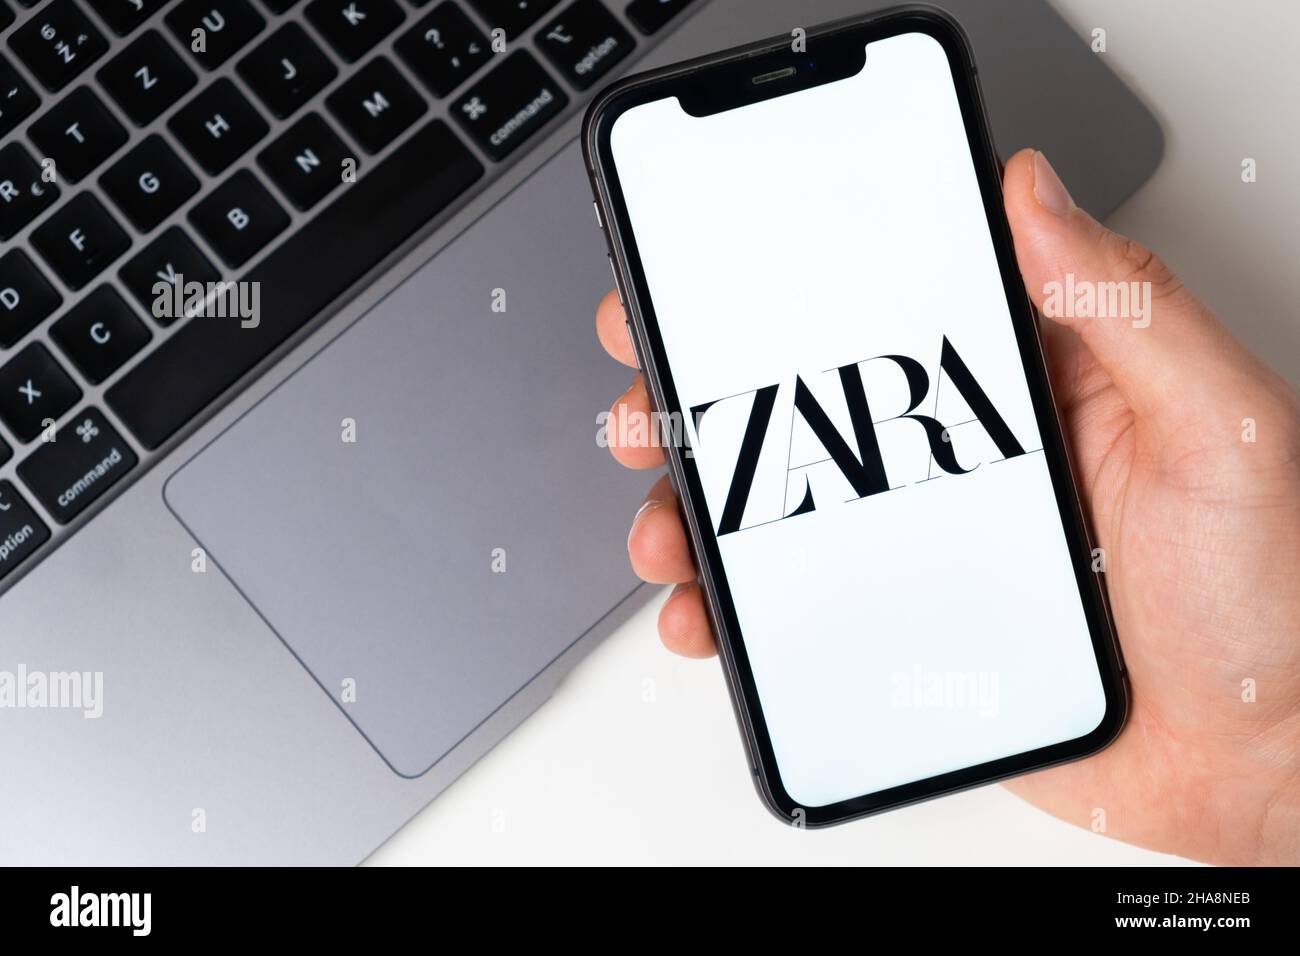 Zara online lieferung -Fotos und -Bildmaterial in hoher Auflösung – Alamy